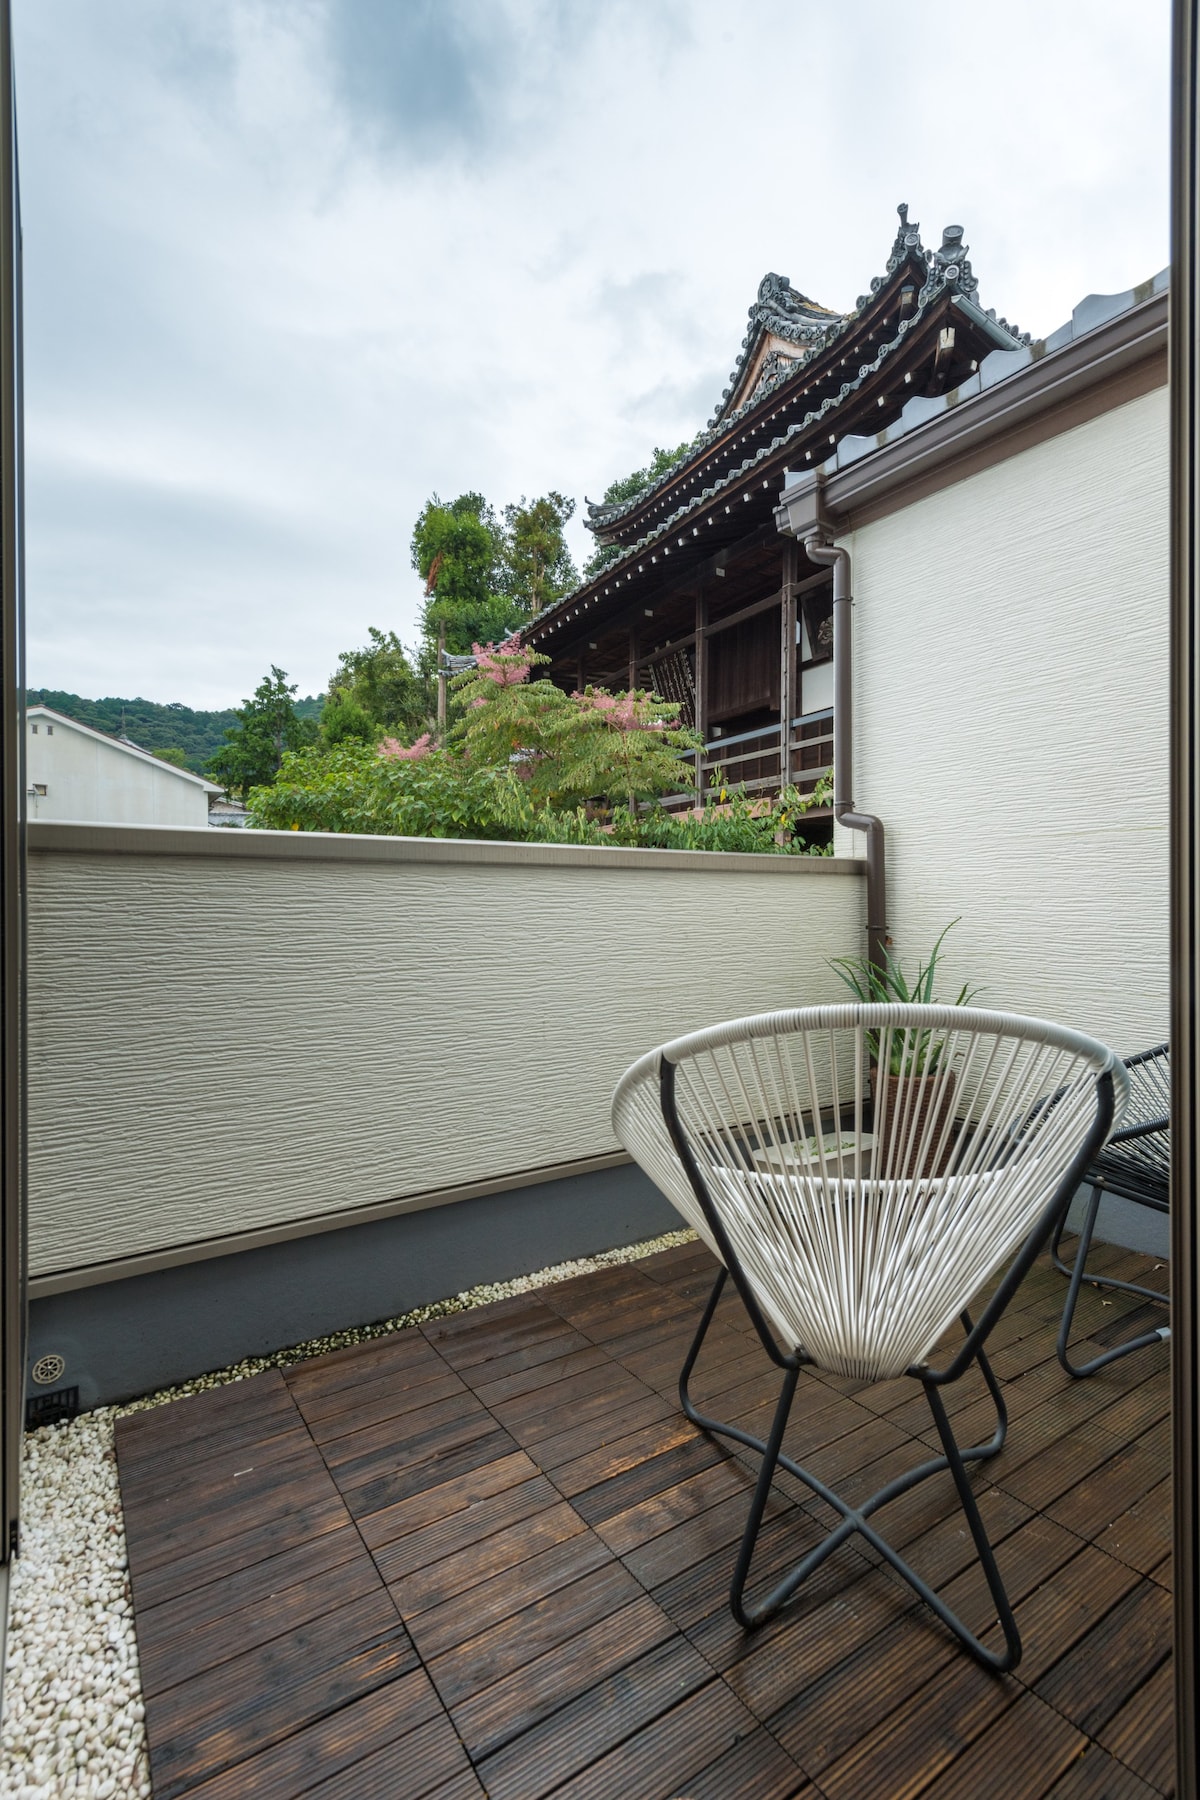 橼舍隠清水 3分钟步行到清水寺的120㎡别墅多个卧室2个独立厕所含停车位可以做饭 提供日本文化体验